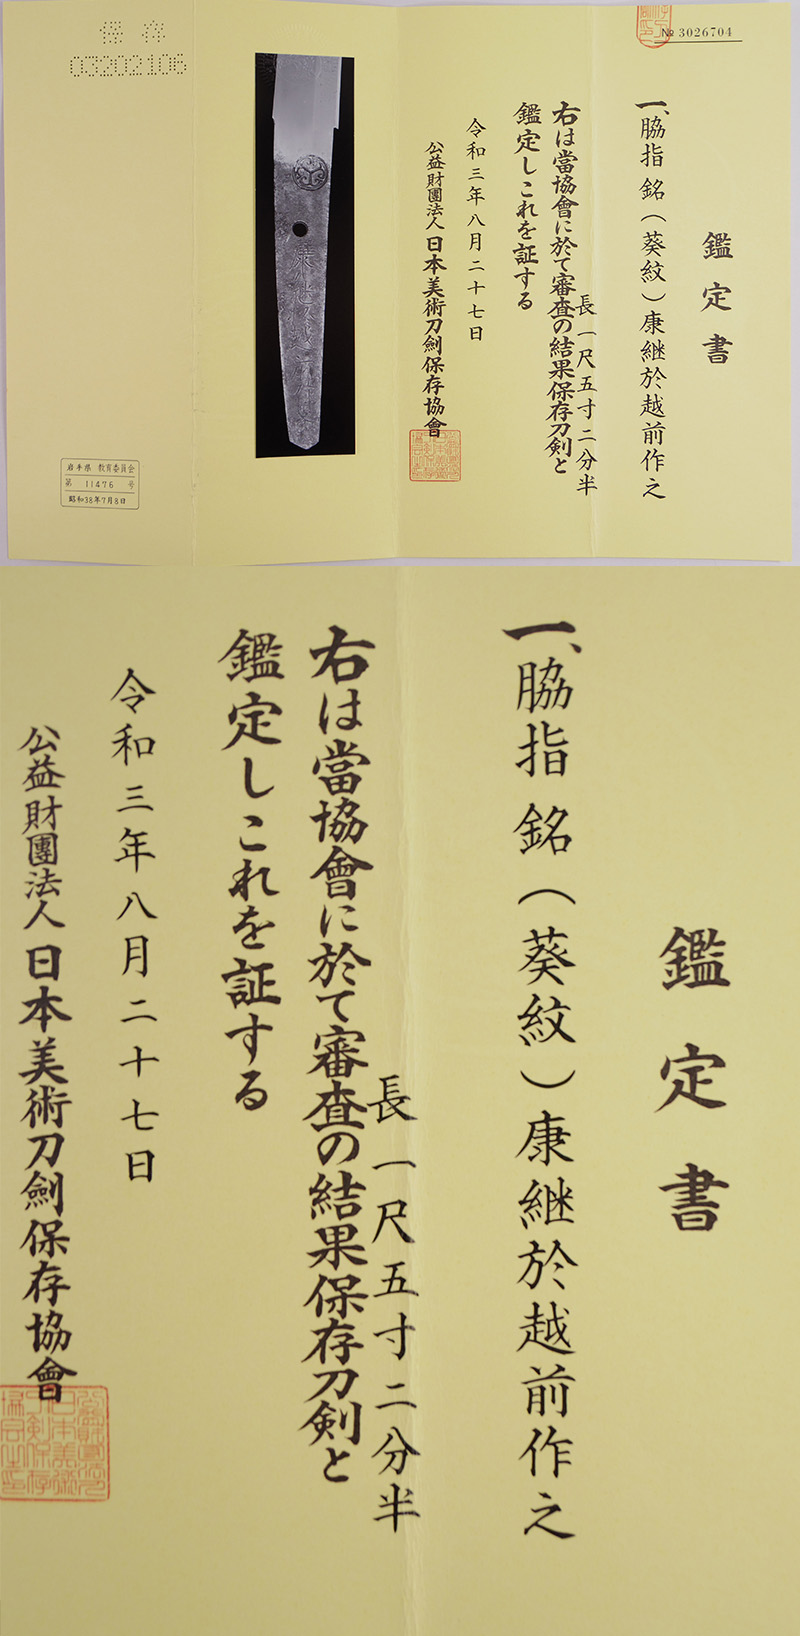 脇差　(葵紋)康継於越前作之(越前三代) Picture of Certificate